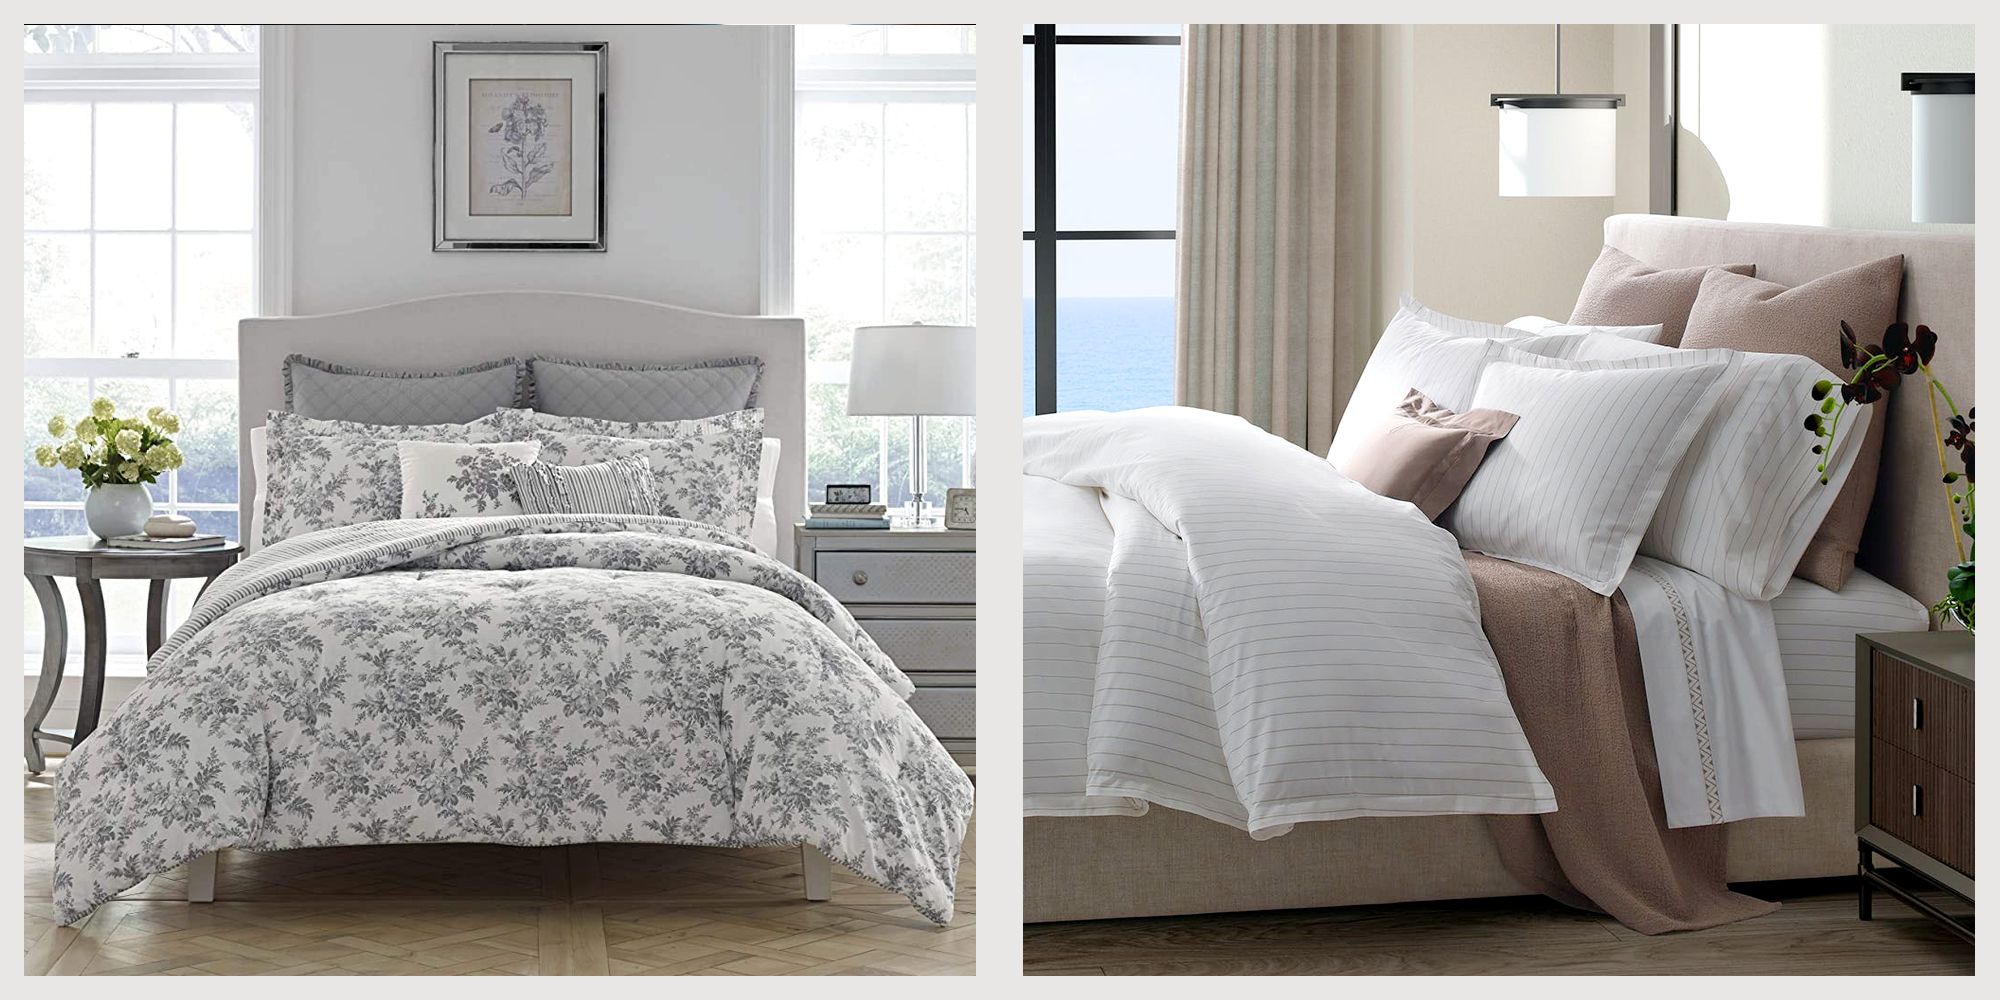 Buy Louis Vuitton Bedding Sets Bed Sets, Bedroom Sets, Comforter Sets, Duvet  Cover, Bedspread